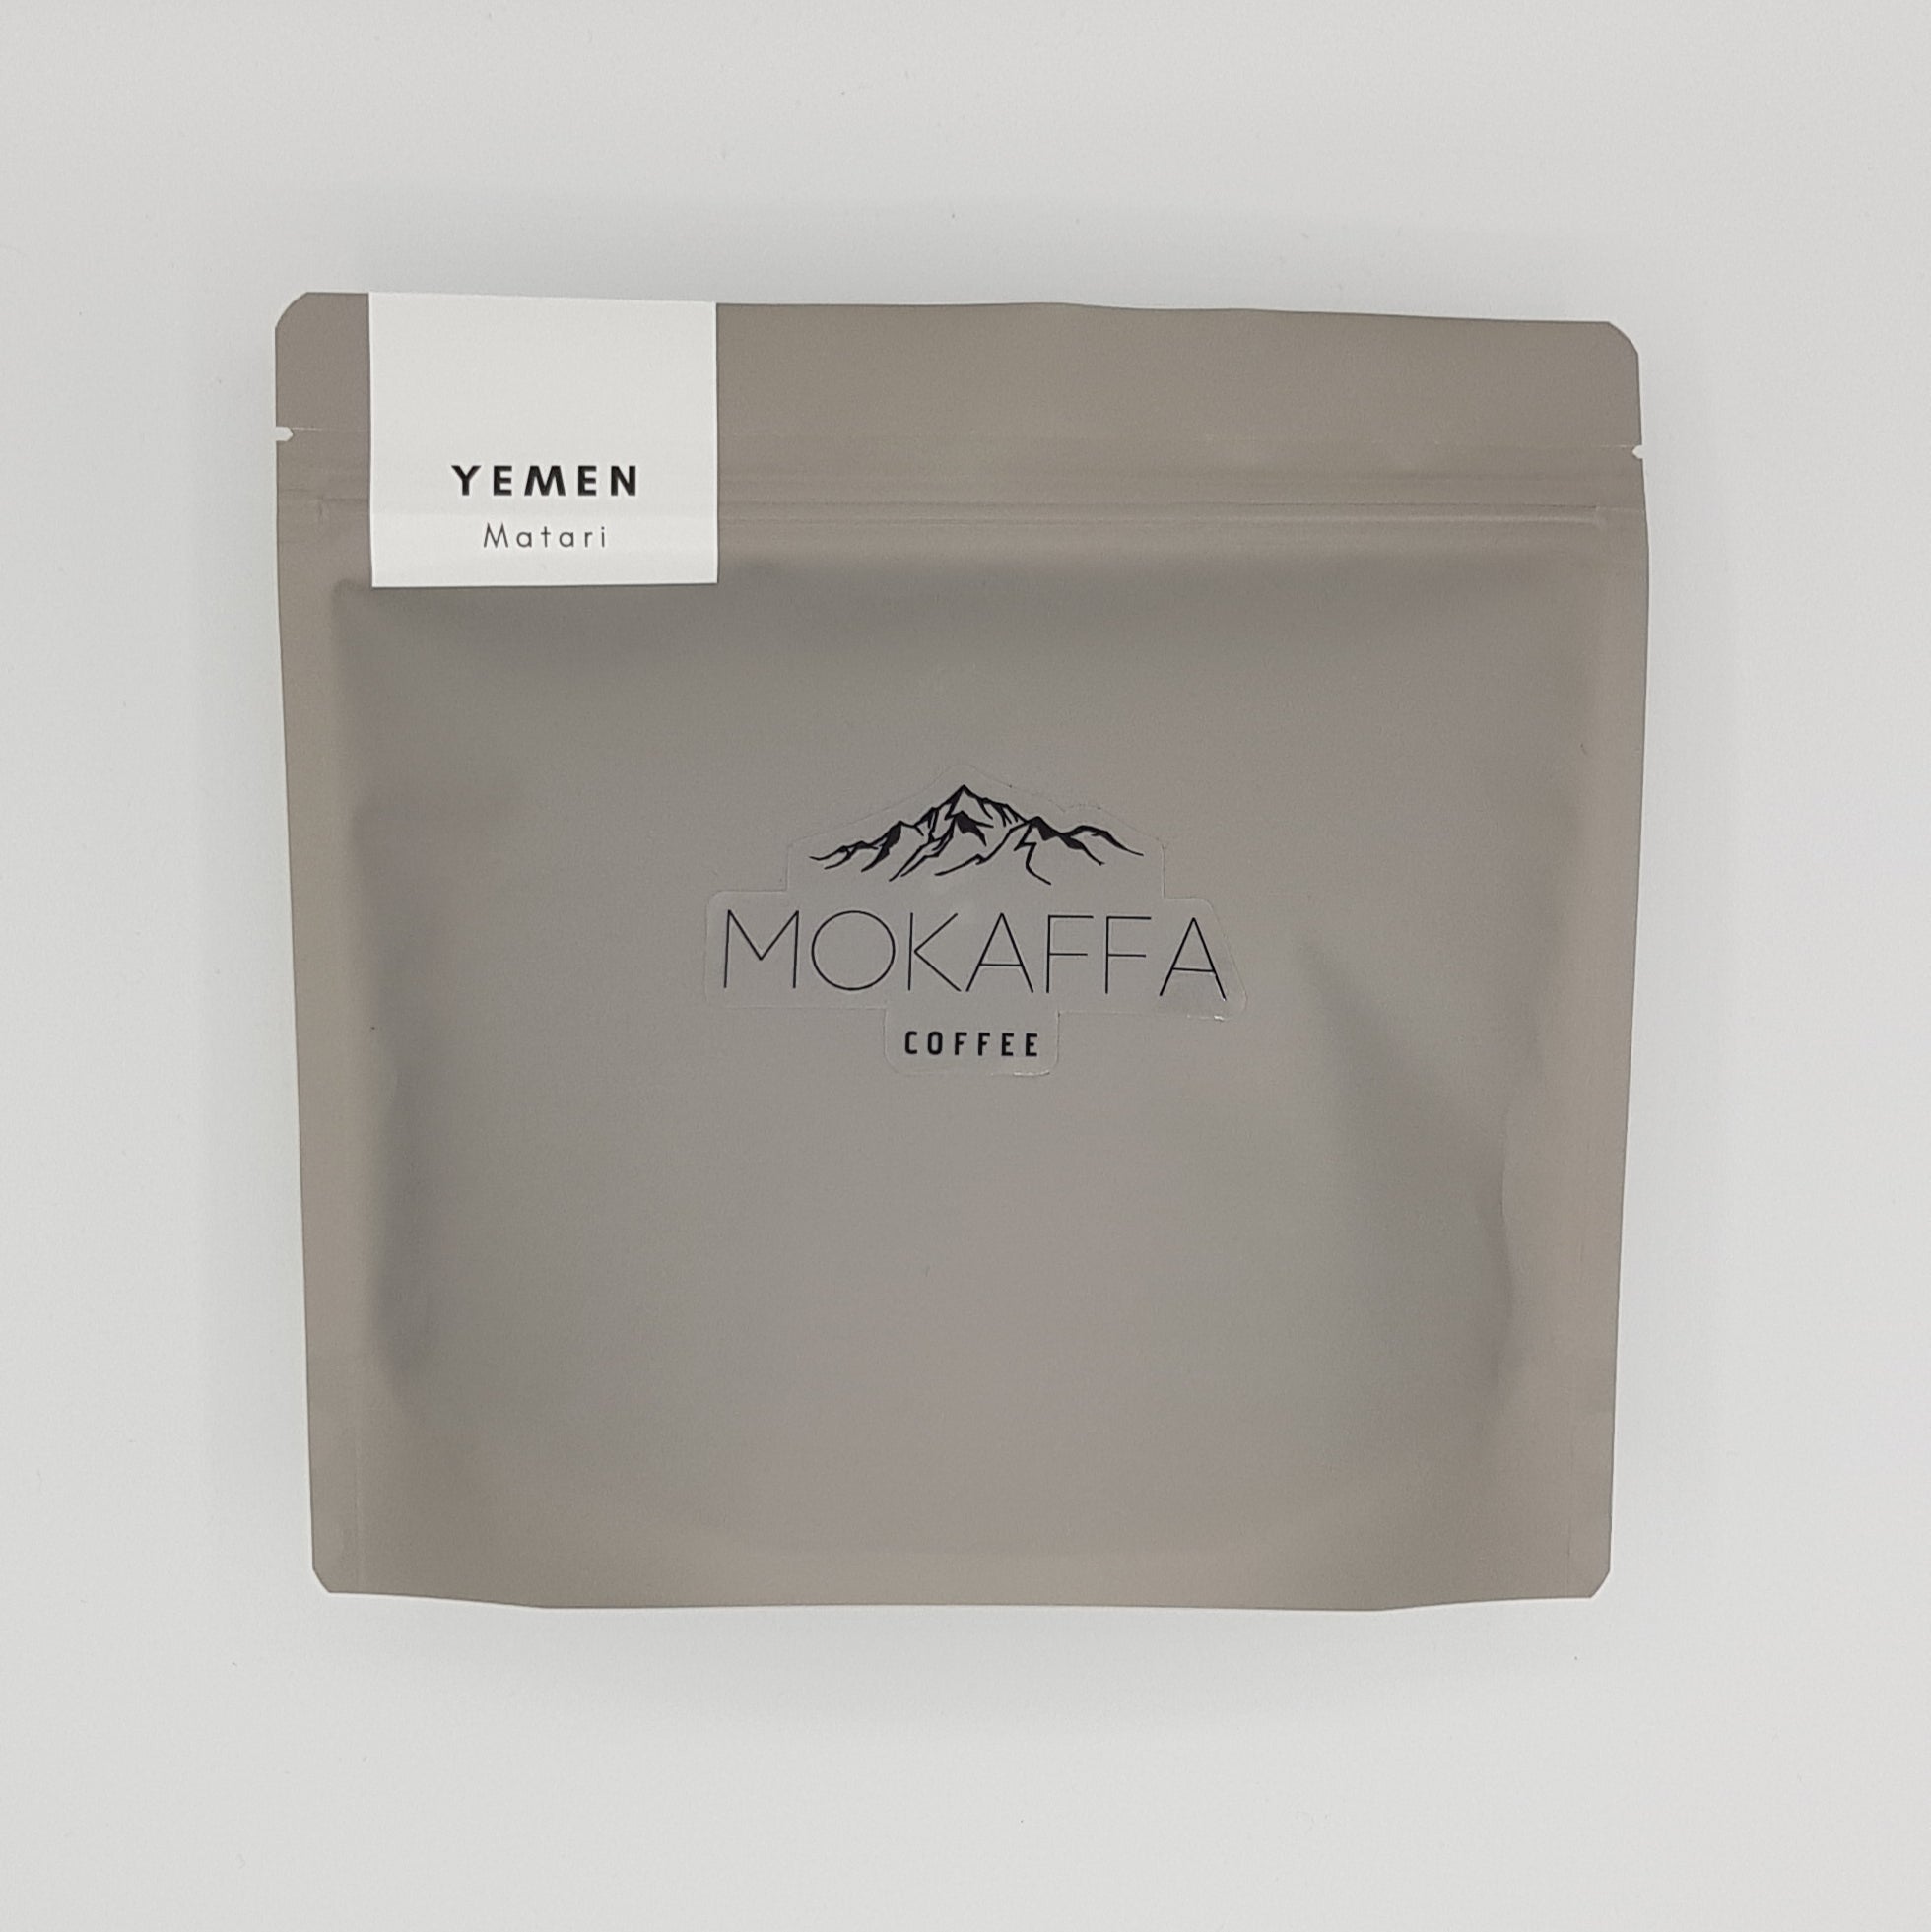 Mokaffa Coffee - Yemeni Matari Coffee